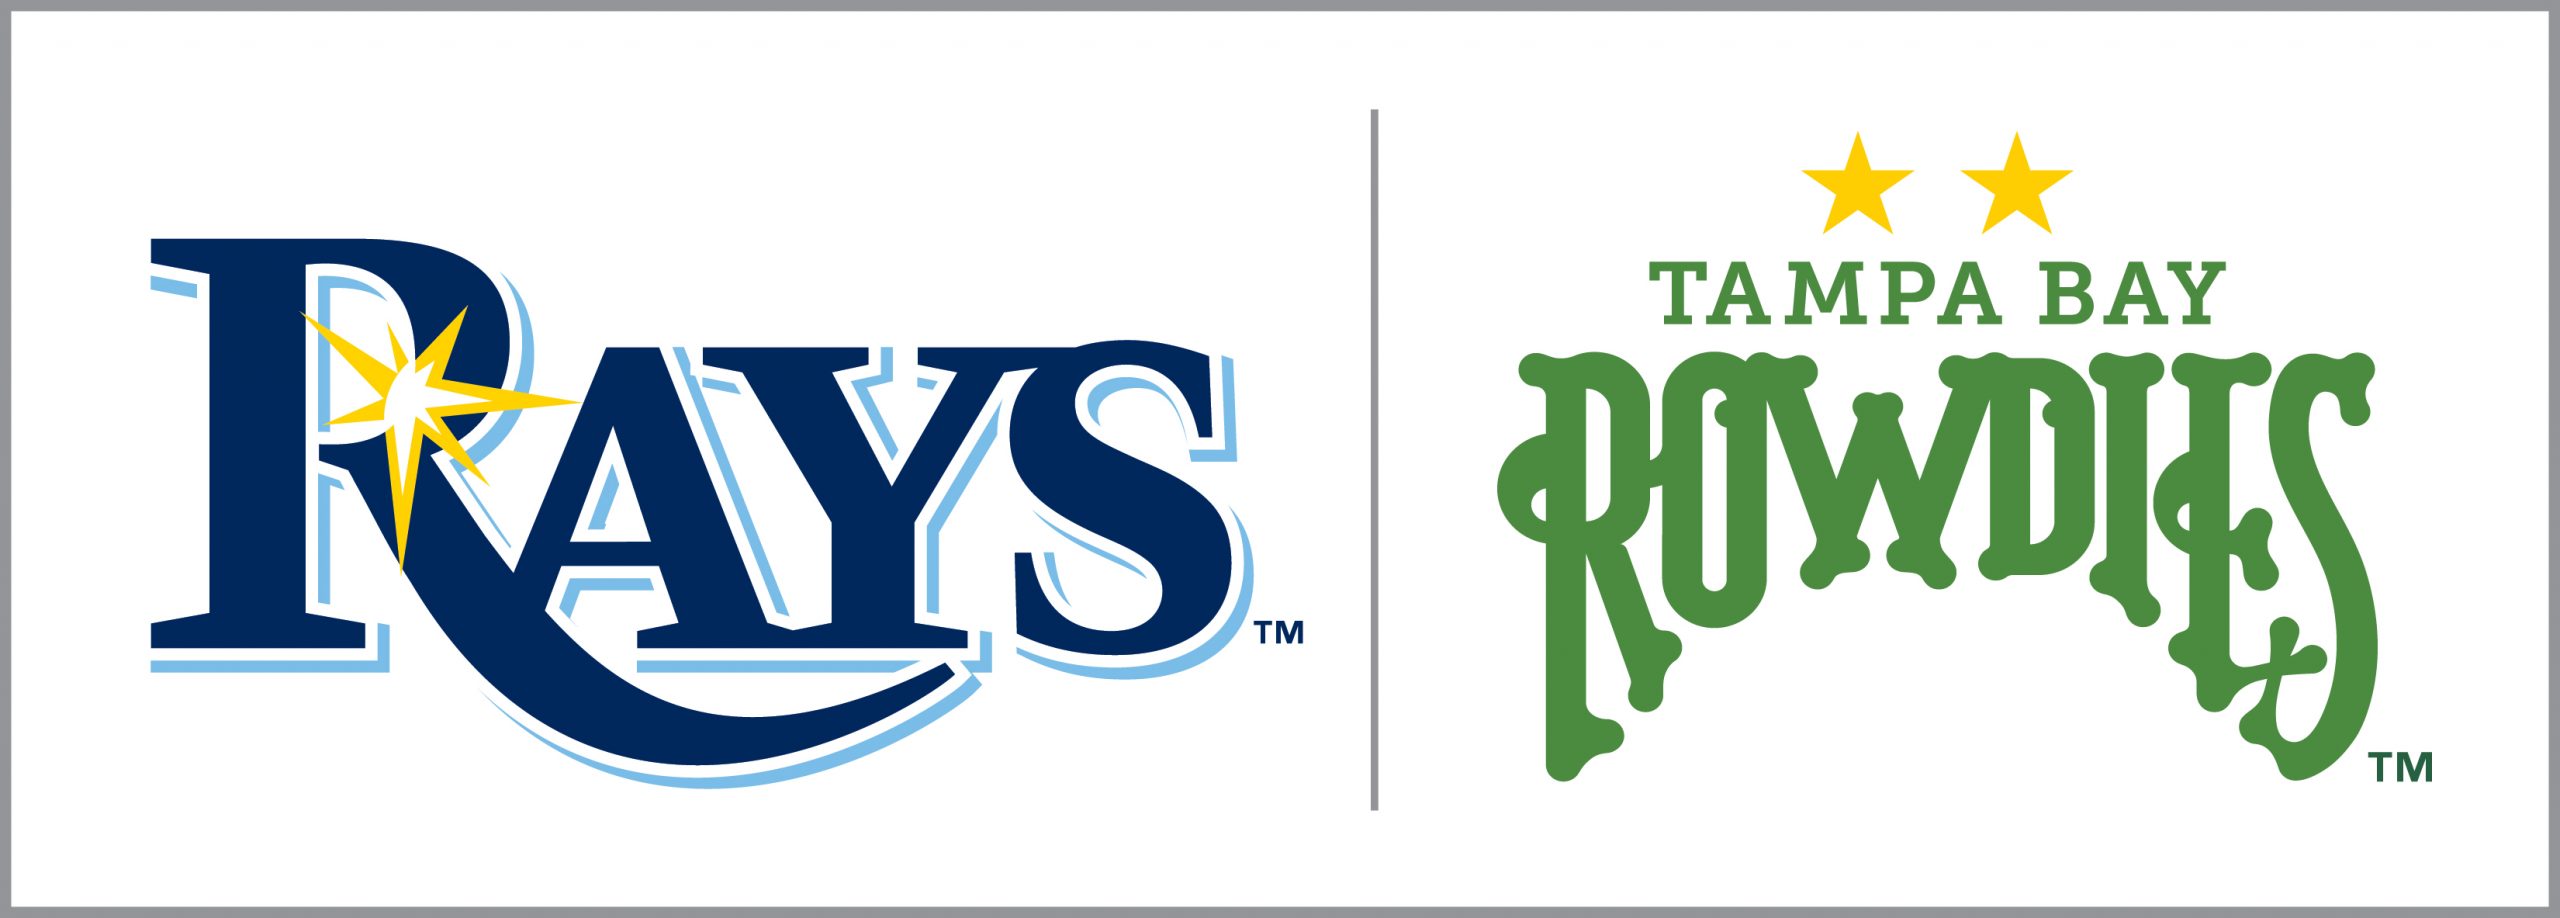 Tampa Bay Rays - Logo History 